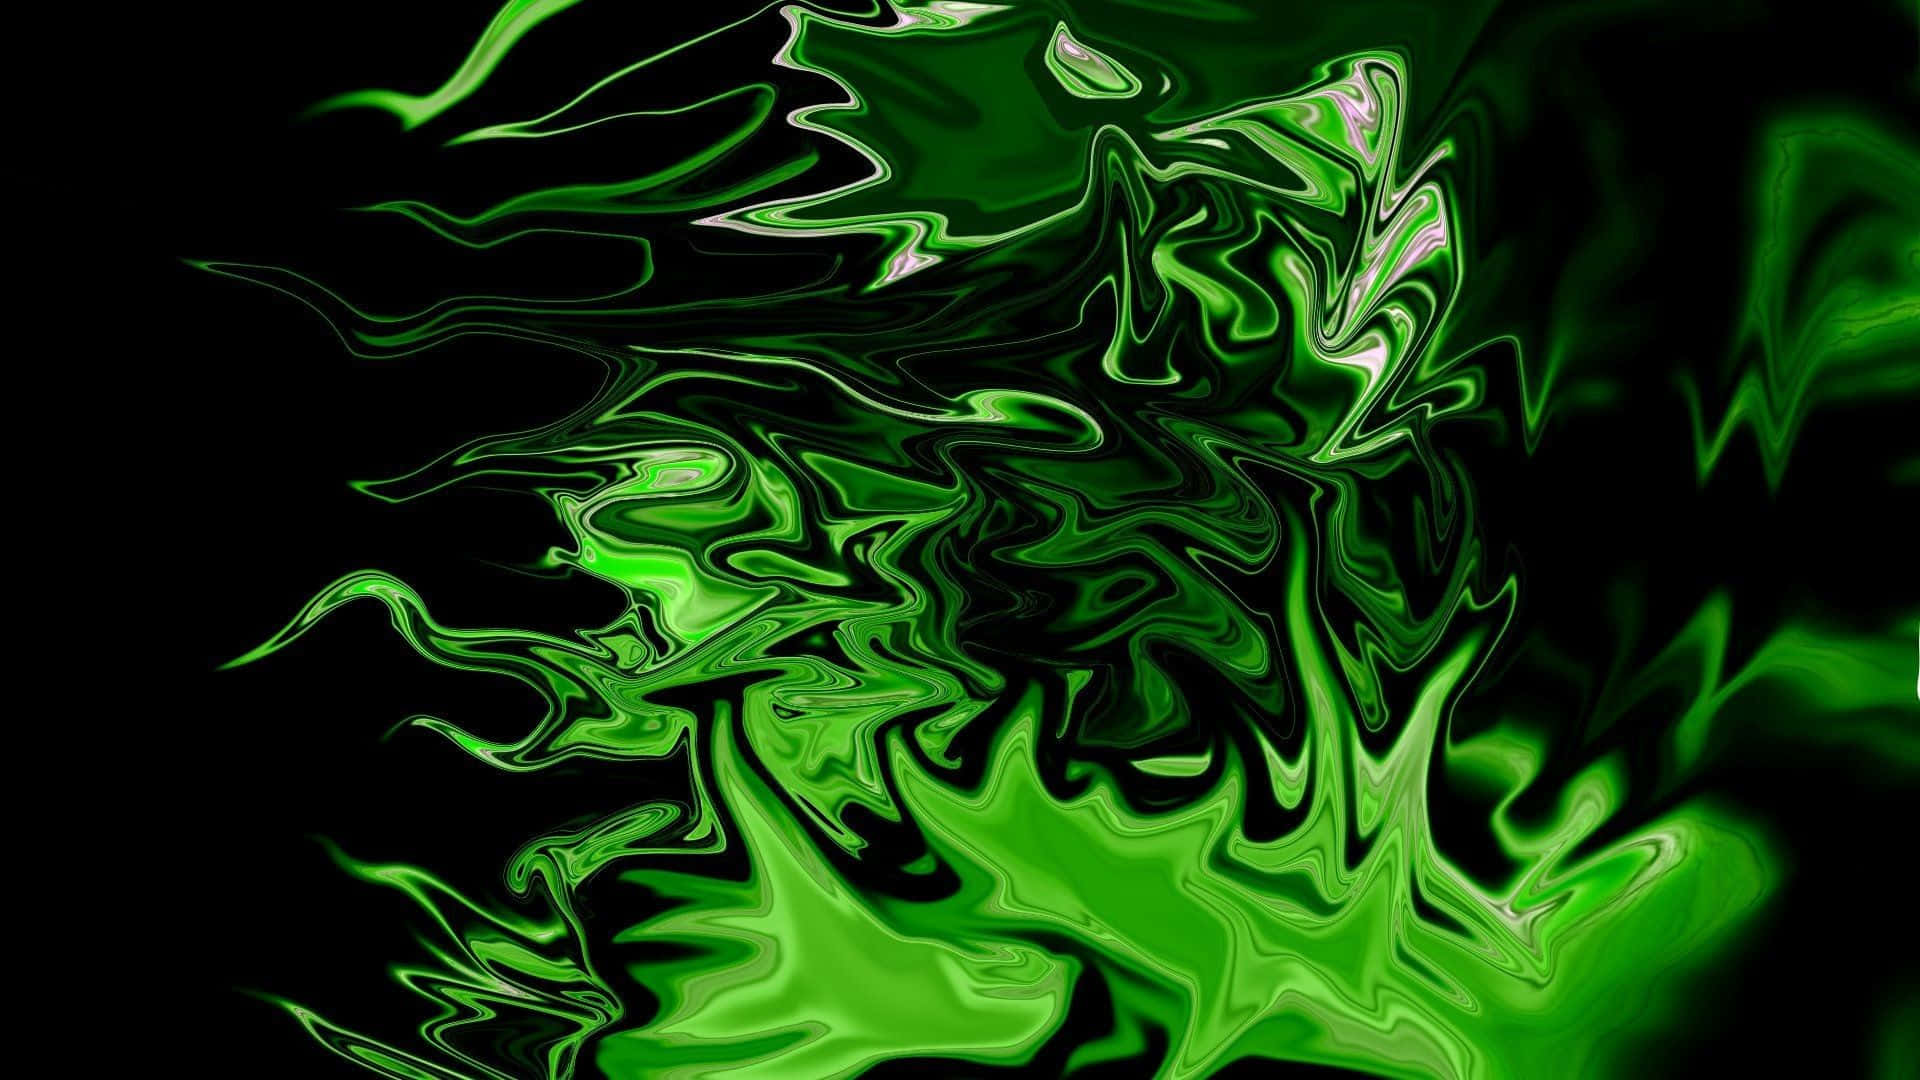 Ispiratodai Vibranti Colori Verde Neon E Nero, Questa Immagine Per Sfondo Desktop Evoca Sensazioni Di Energia E Giovinezza. Sfondo